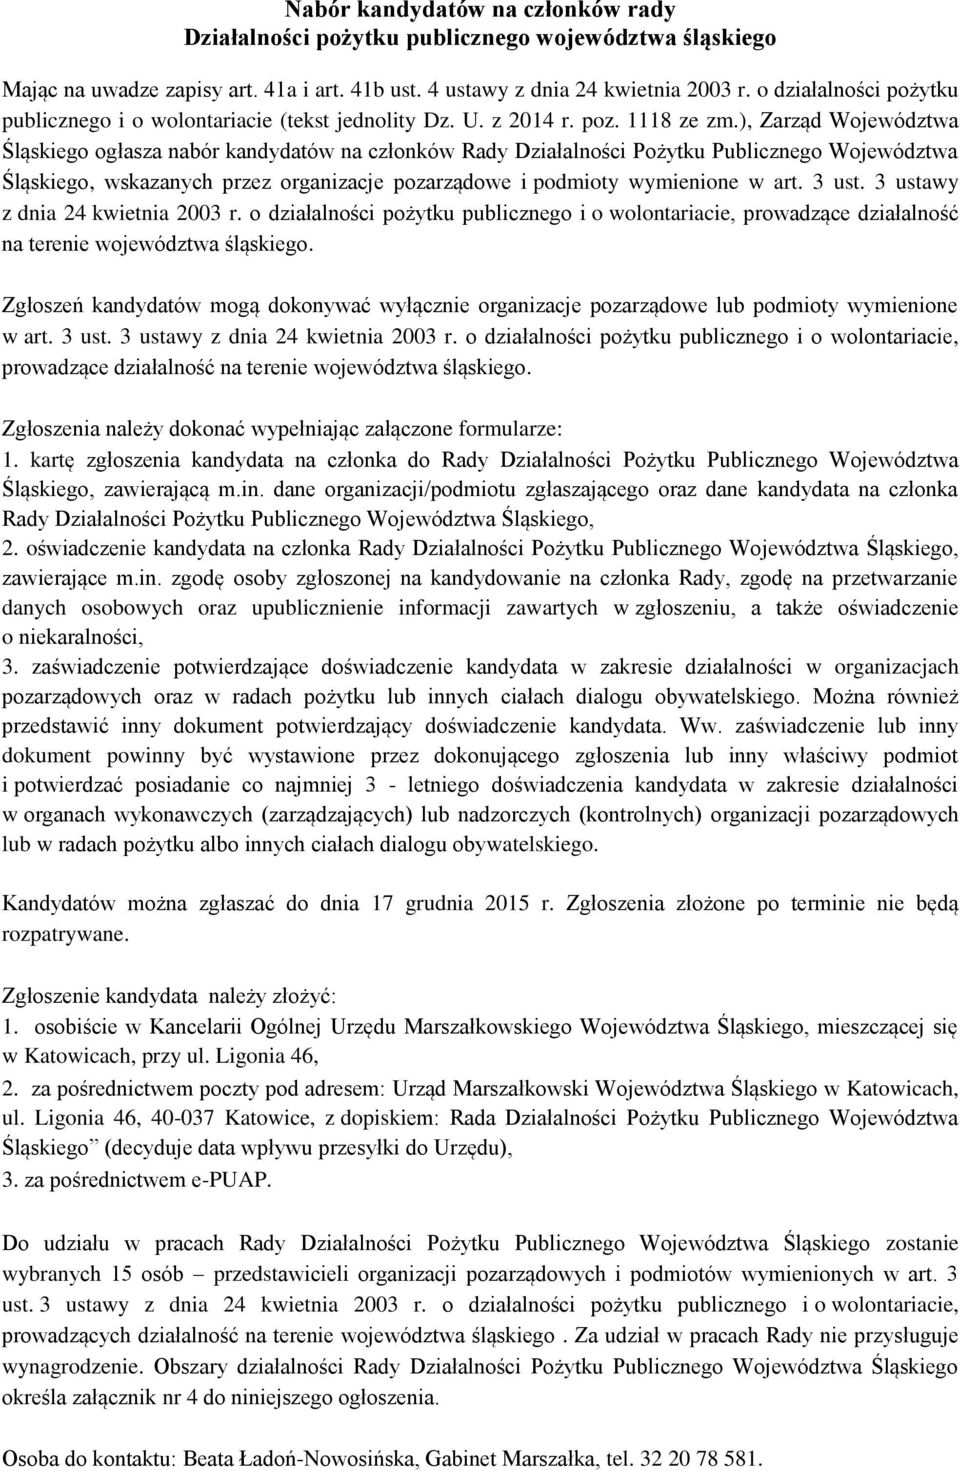 ), Zarząd Województwa Śląskiego ogłasza nabór kandydatów na członków Rady Działalności Pożytku Publicznego Województwa Śląskiego, wskazanych przez organizacje pozarządowe i podmioty wymienione w art.